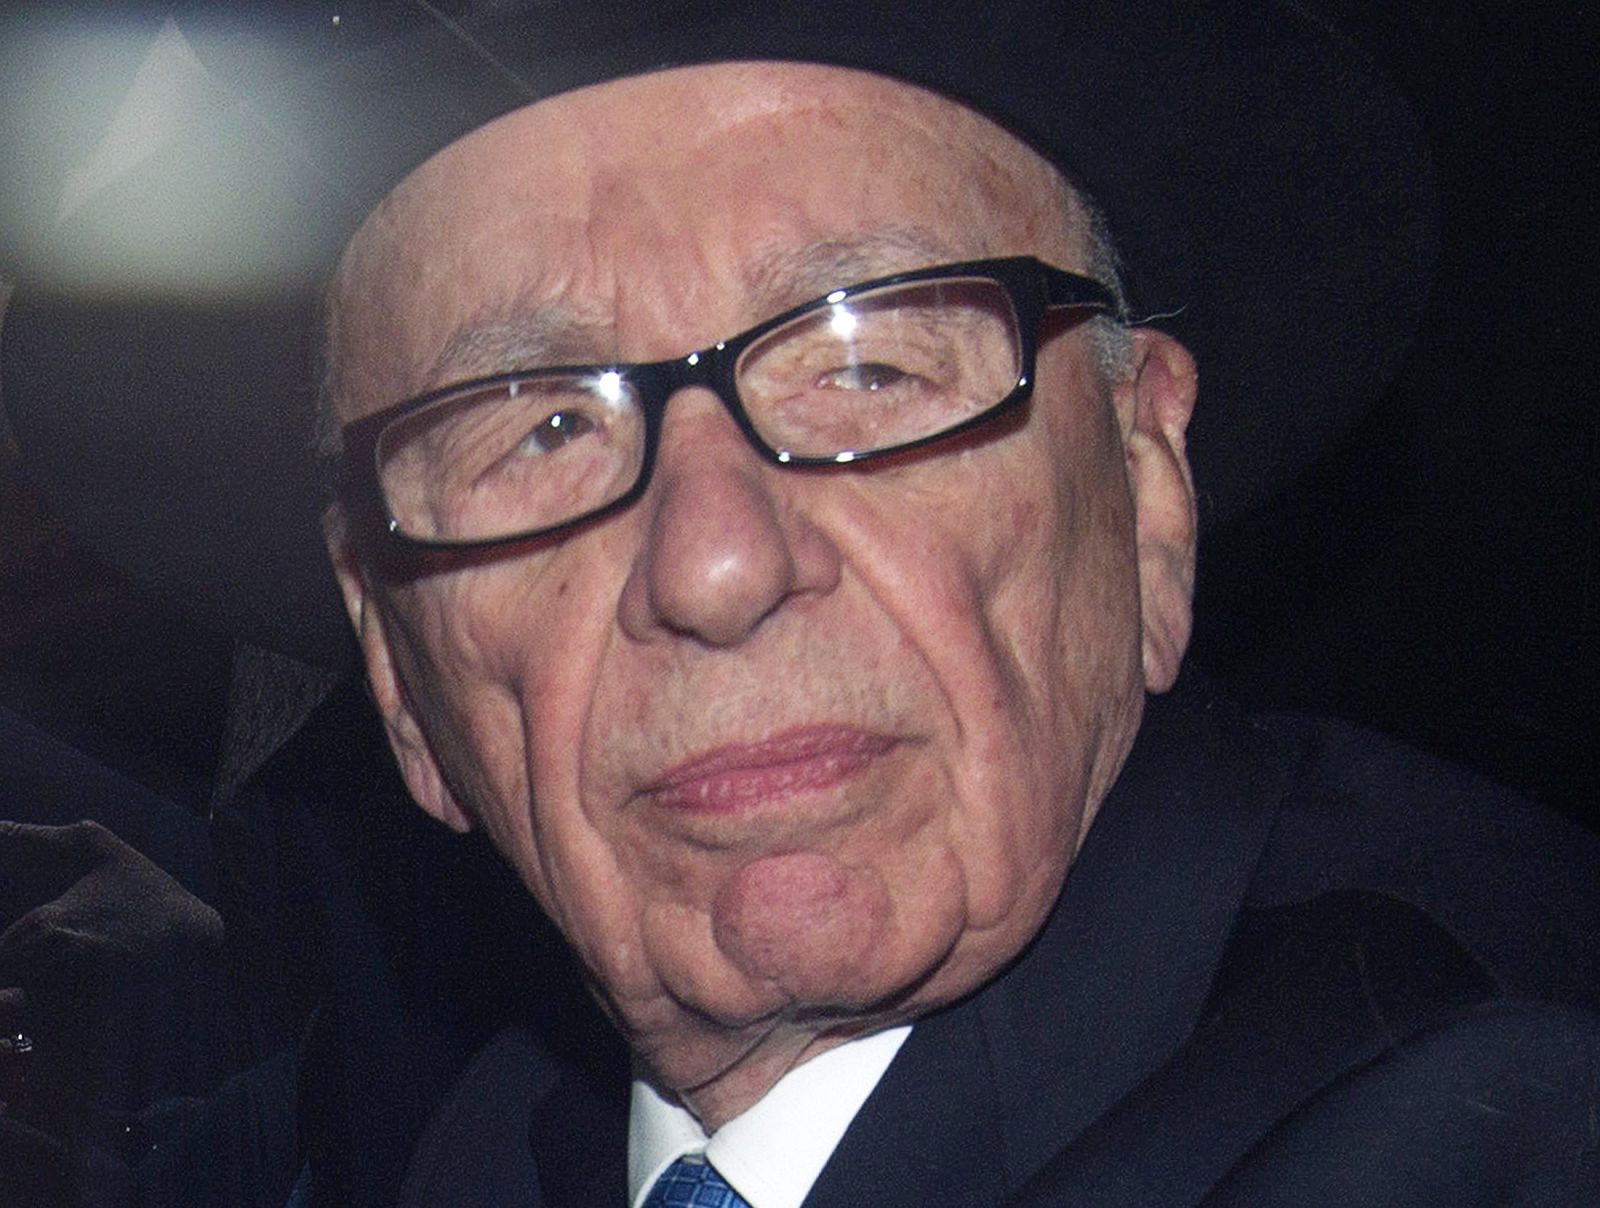 El presidente de News Corporation, Rupert Murdoch, en una foto tomada tras prestar declaración, el 26 de abril